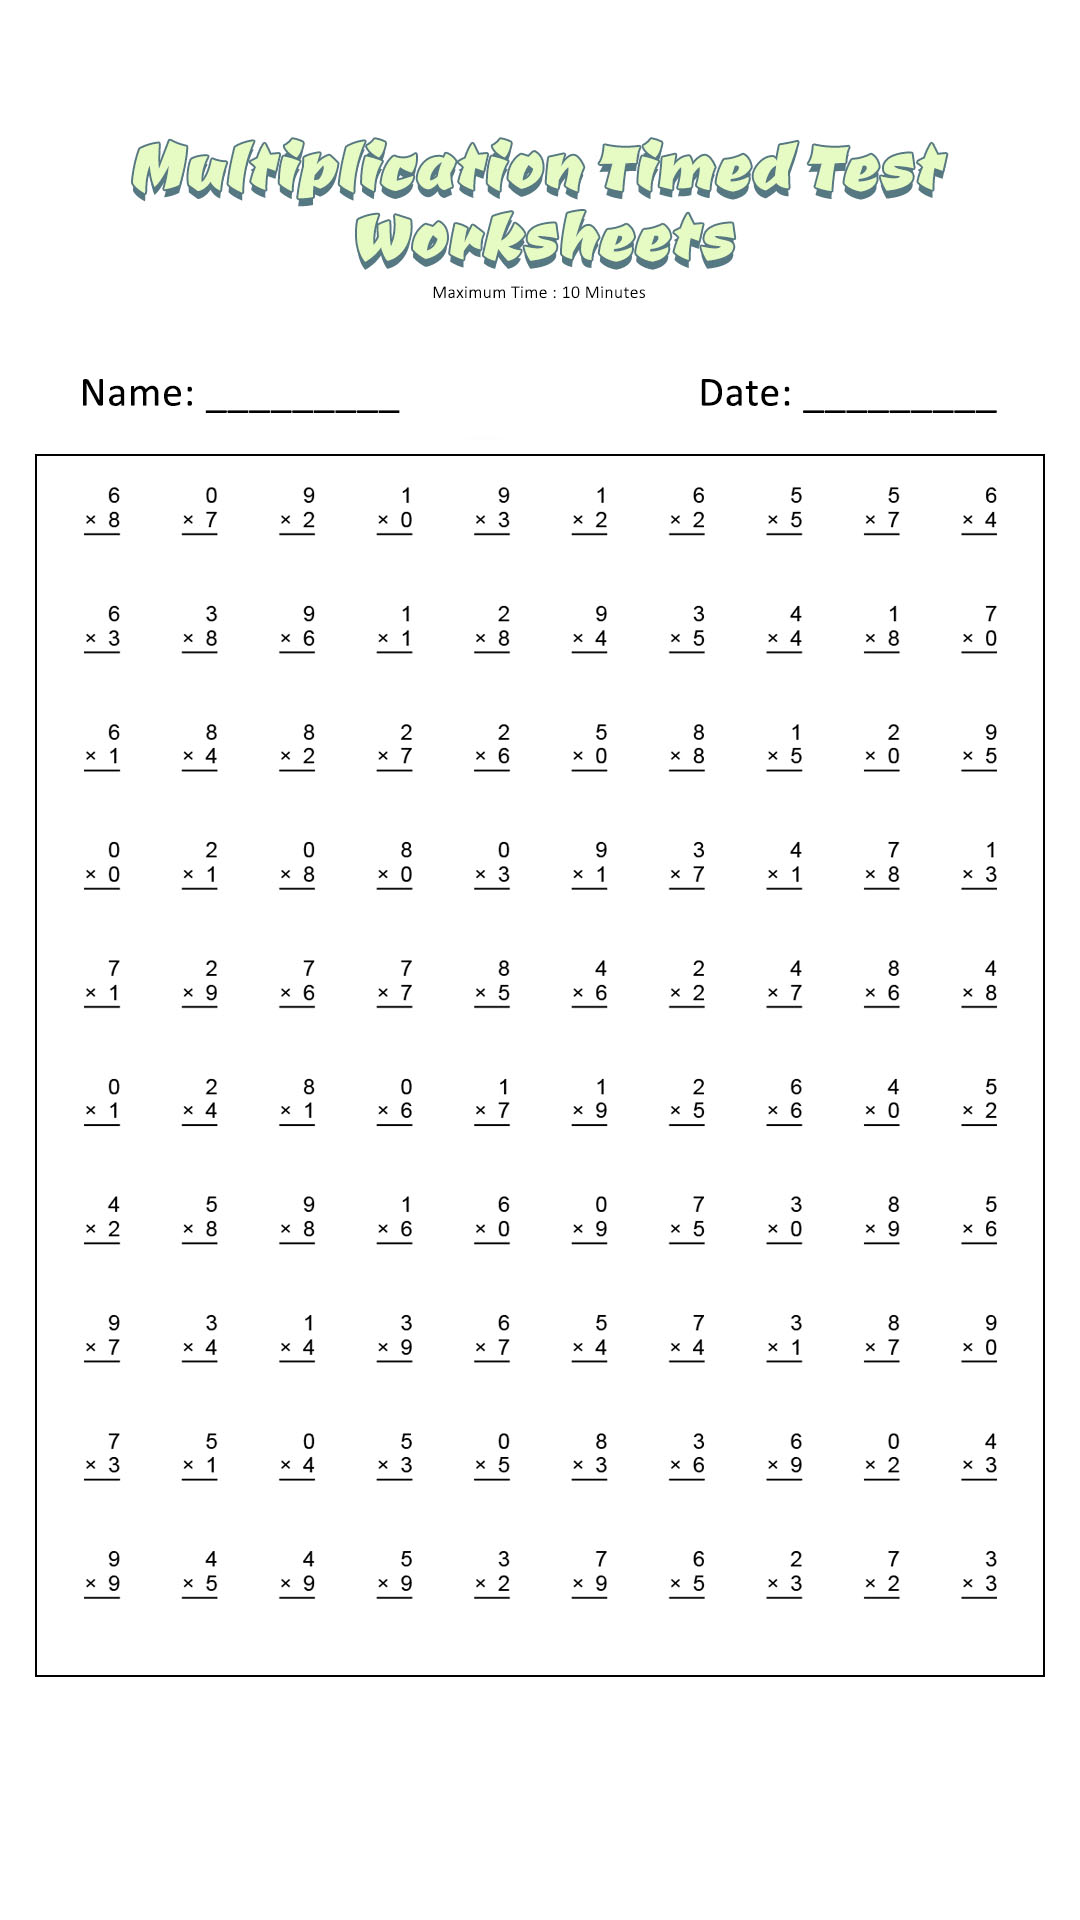 Multiplication Timed Test Worksheets Image